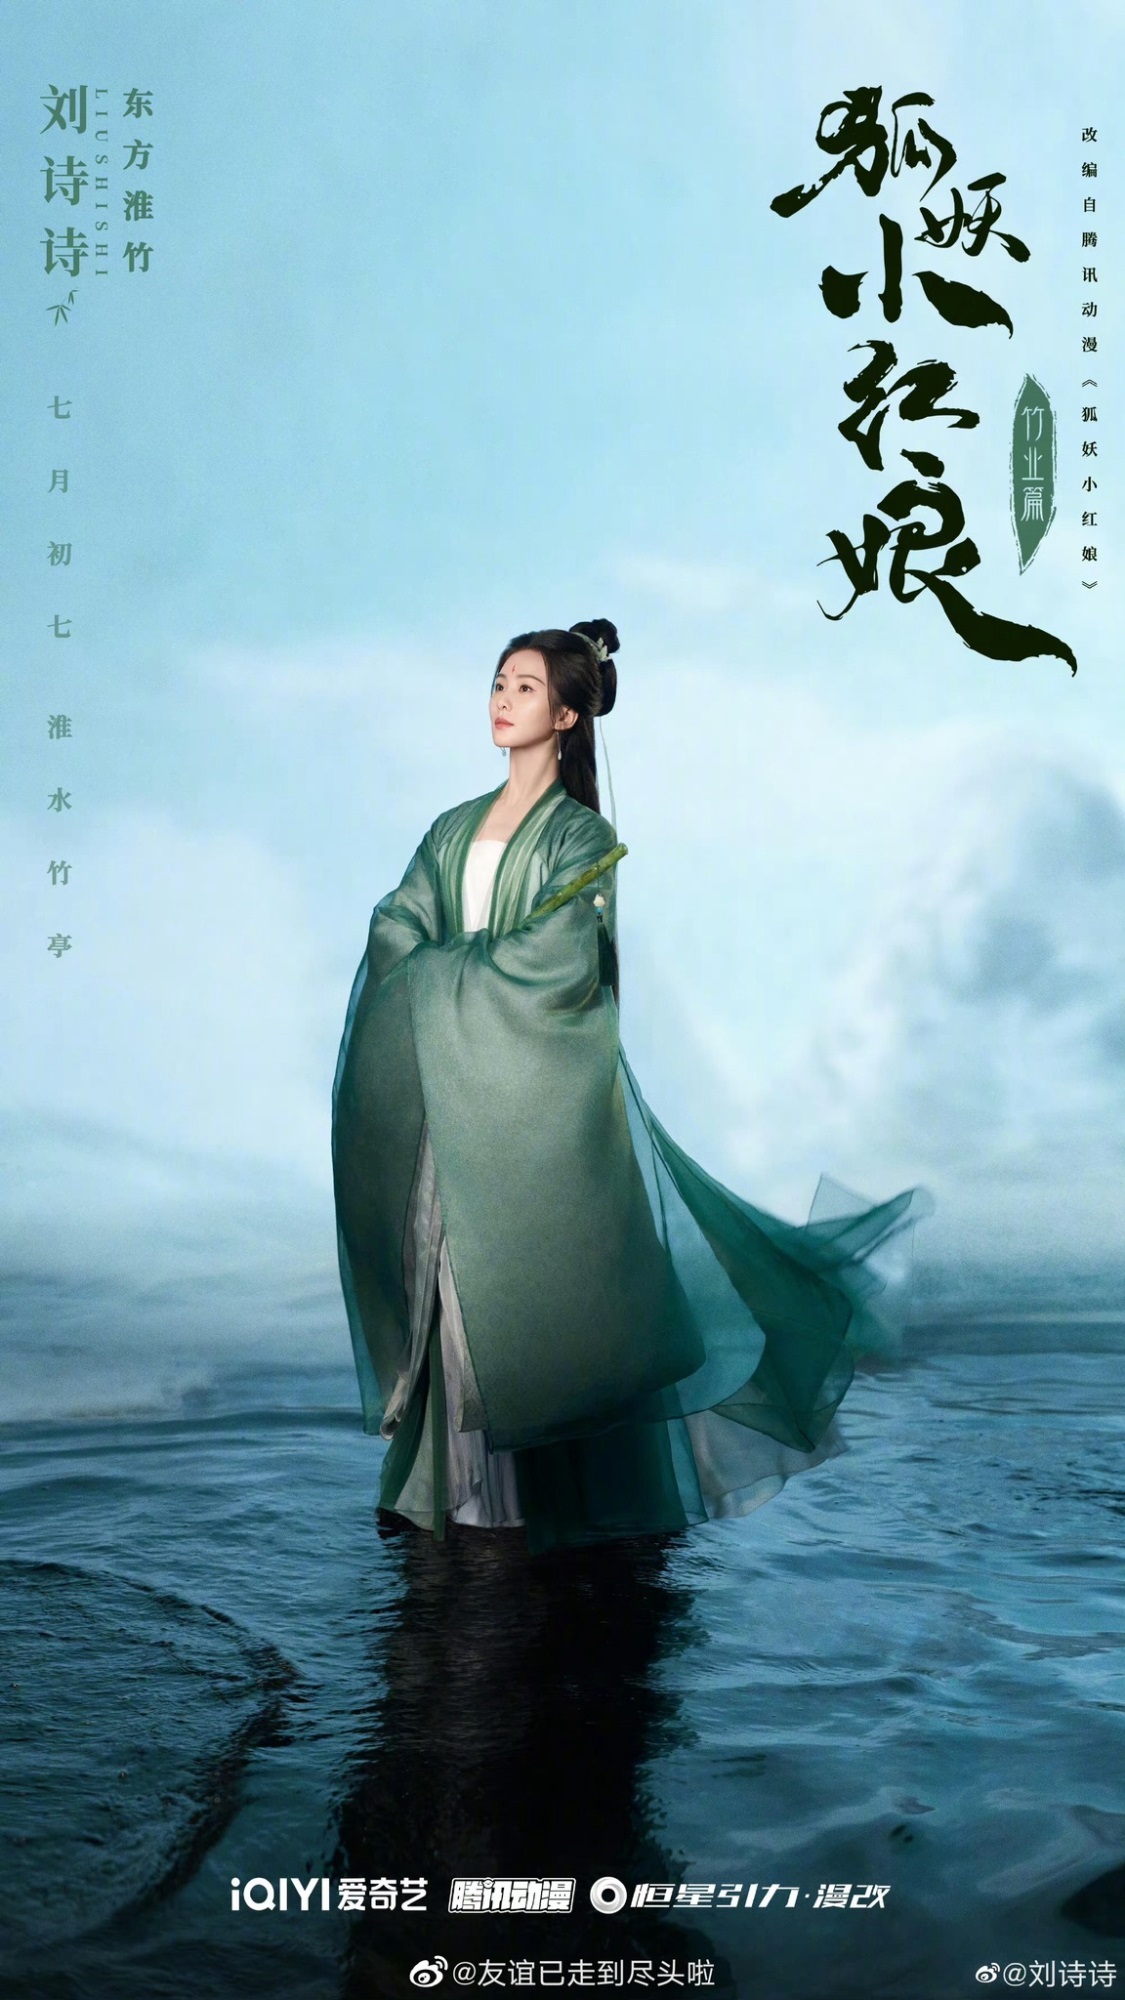 Dương Mịch sẽ vào vai khách mời cho Hồ Yêu Tiểu Hồng Nương phần Trúc Nghiệp của Lưu Thi Thi - Ảnh 1